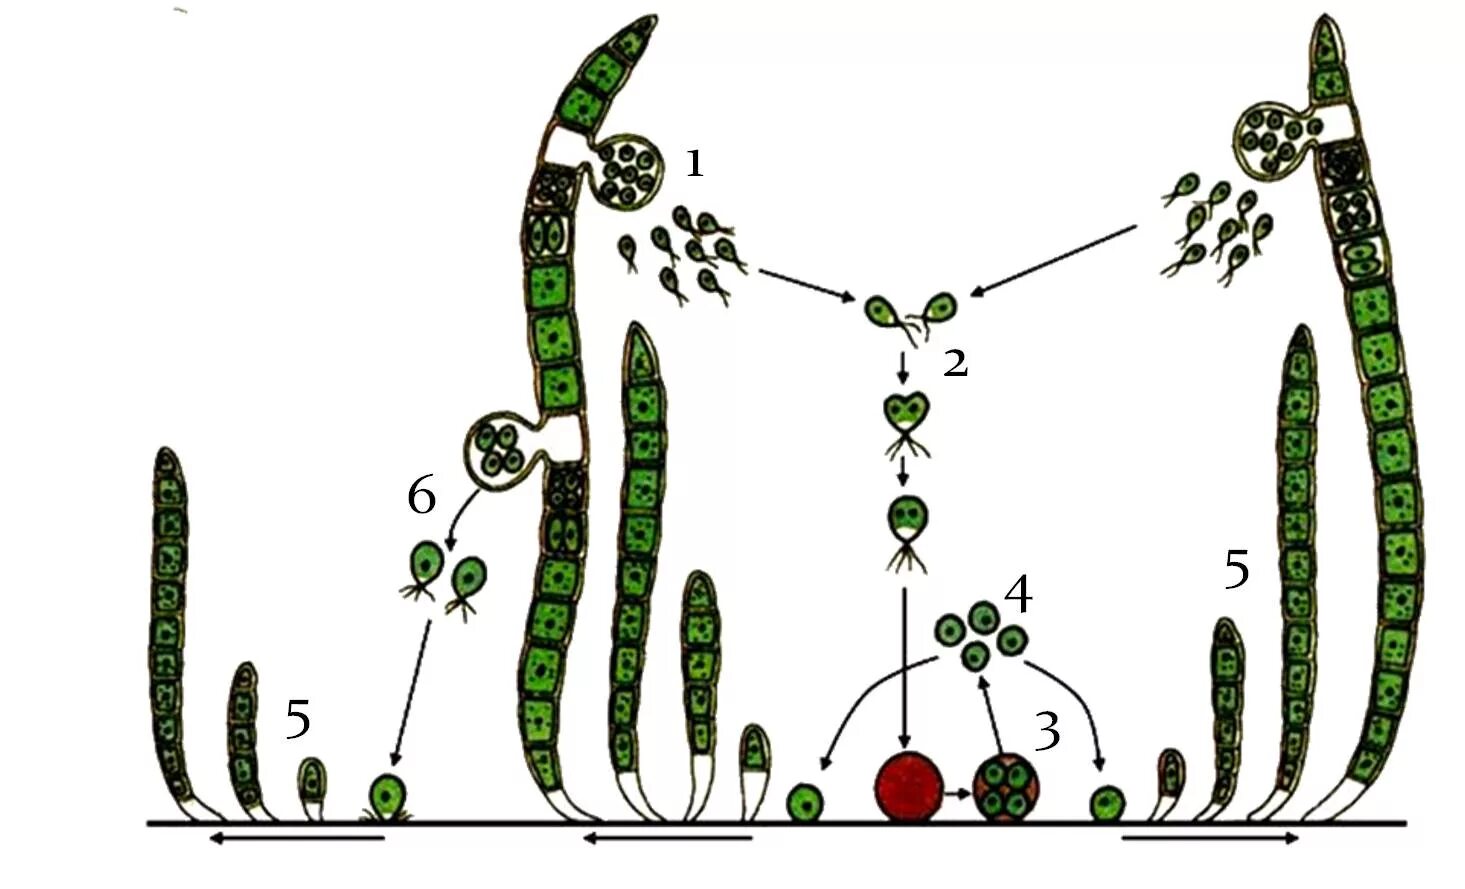 Улотрикс цикл размножения. Размножение водорослей схема улотрикс. Улотрикс бесполое размножение. Цикл развития улотрикса схема.